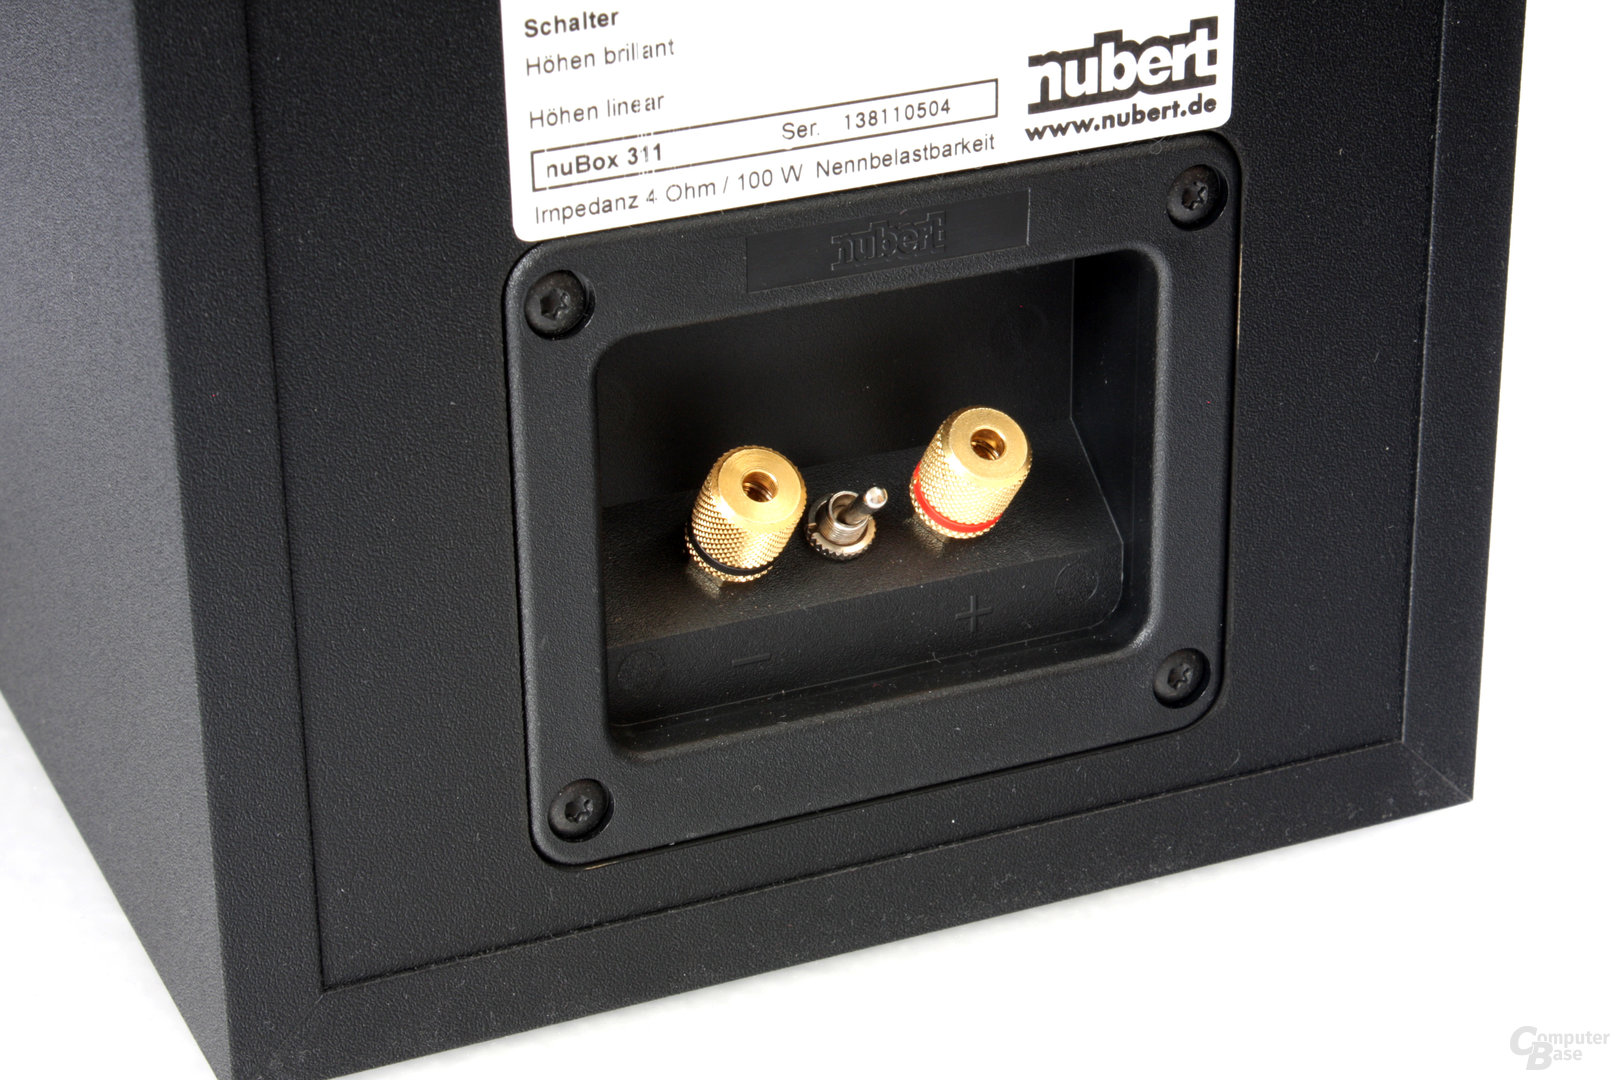 Anschlussterminal der kompakten Nubert-Lautsprecher